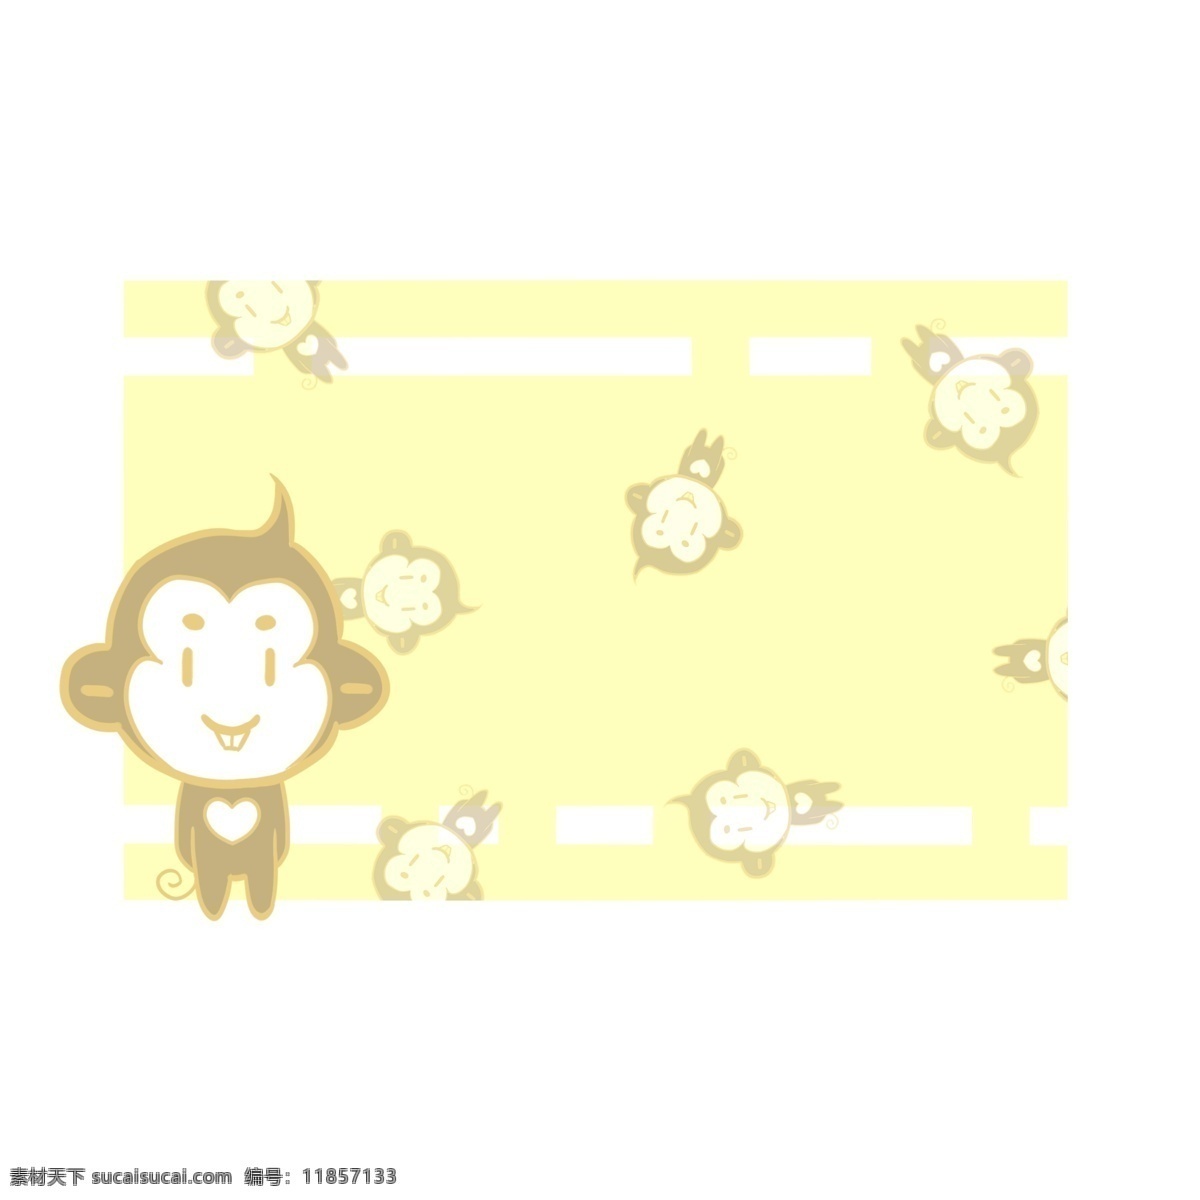 黄色 猴子 边框 插画 黄色的边框 可爱的边框 动物边框 唯美边框 黑色的猴子 漂亮